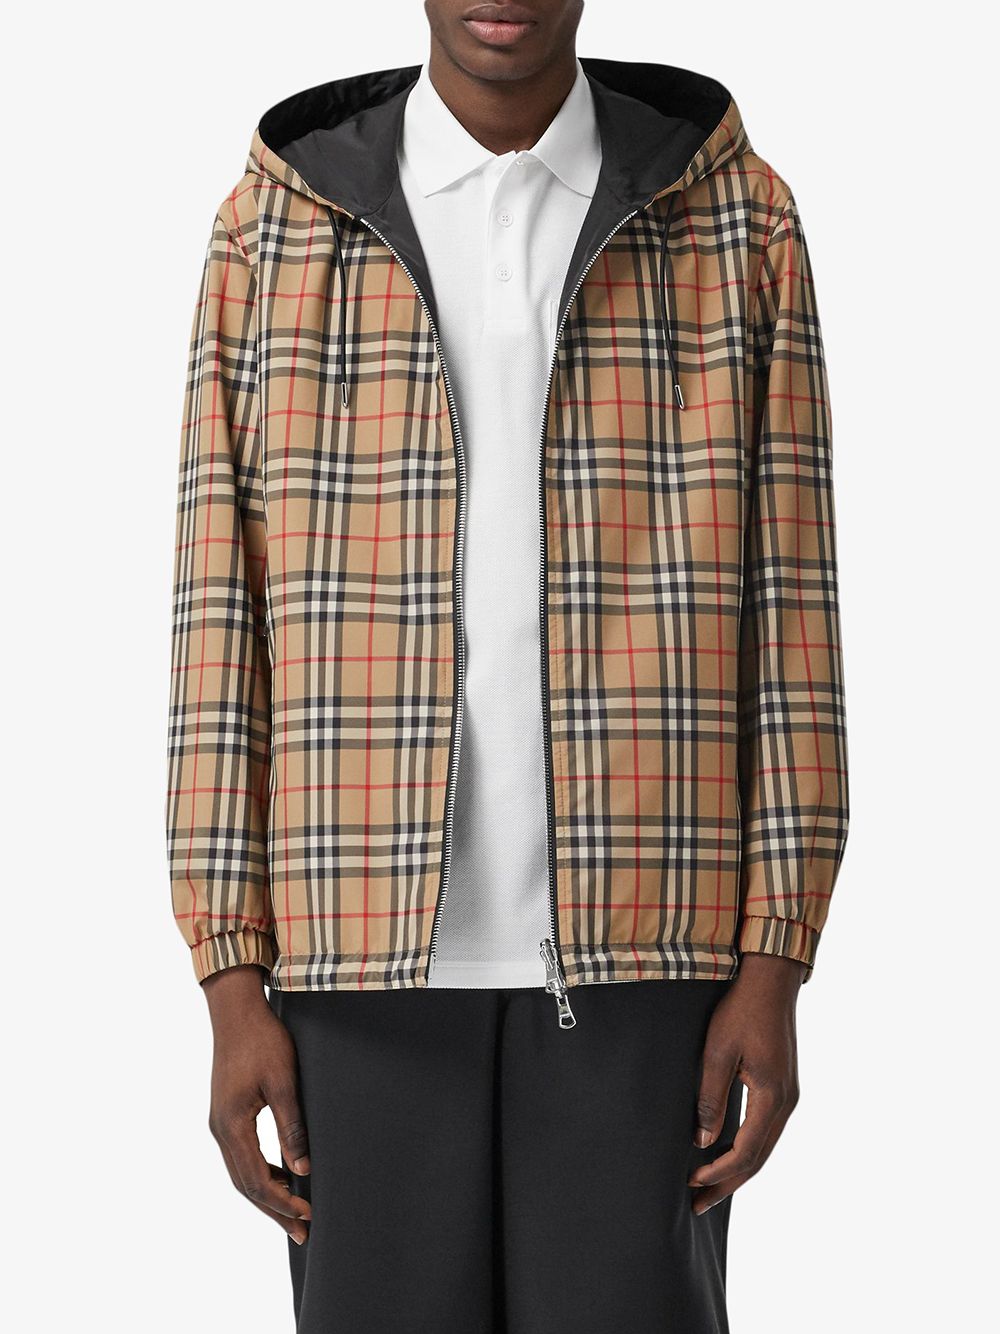 Burberry Coats Beige